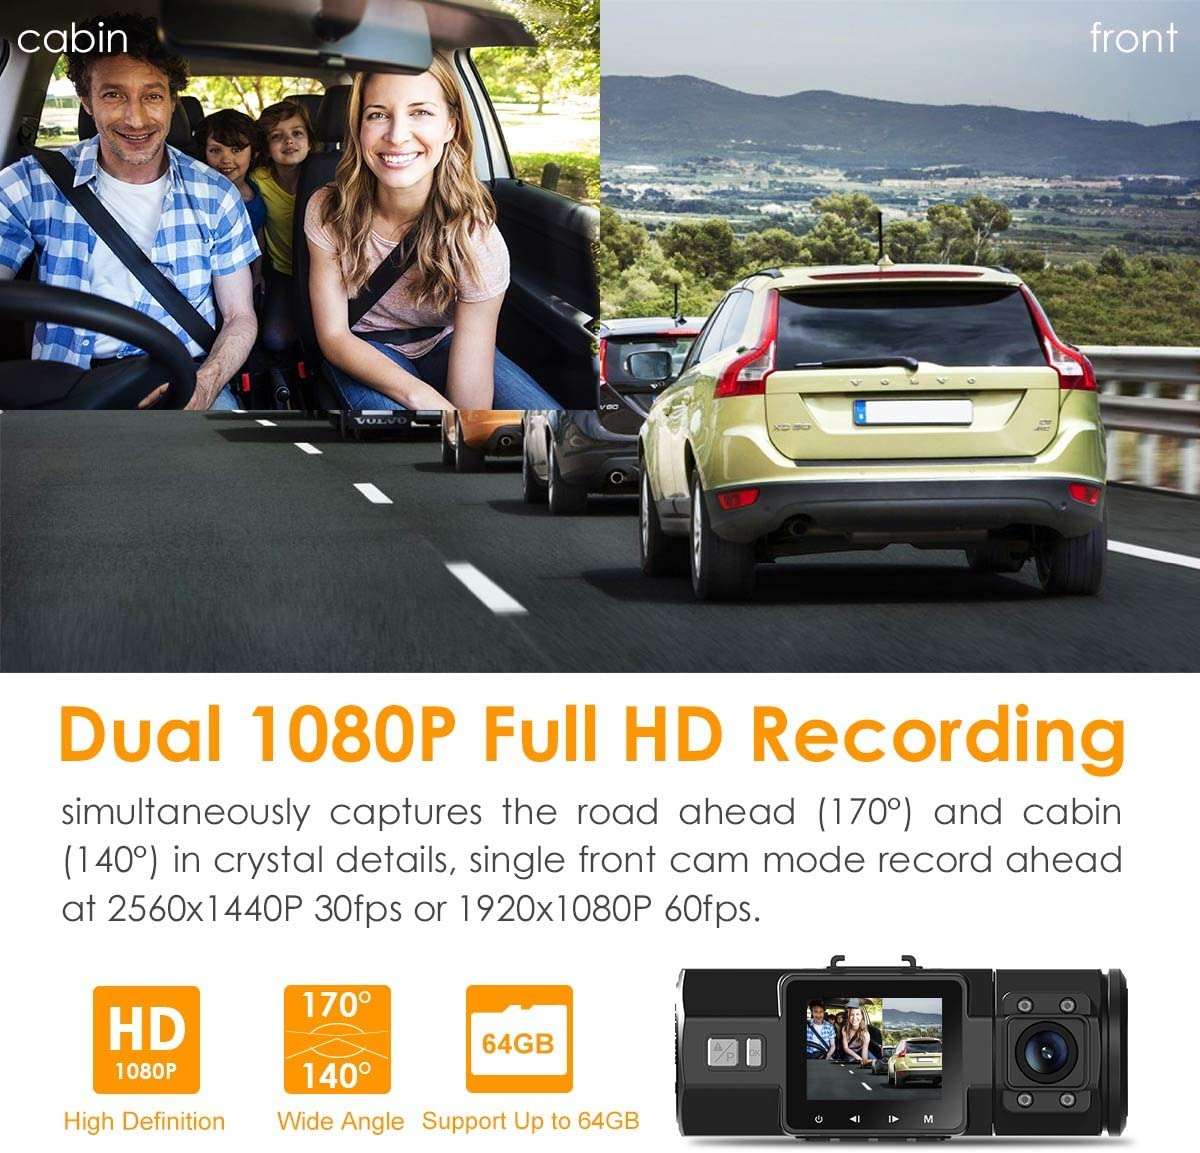 Caméra embarquée Vantrue N2 Pro double 1080p